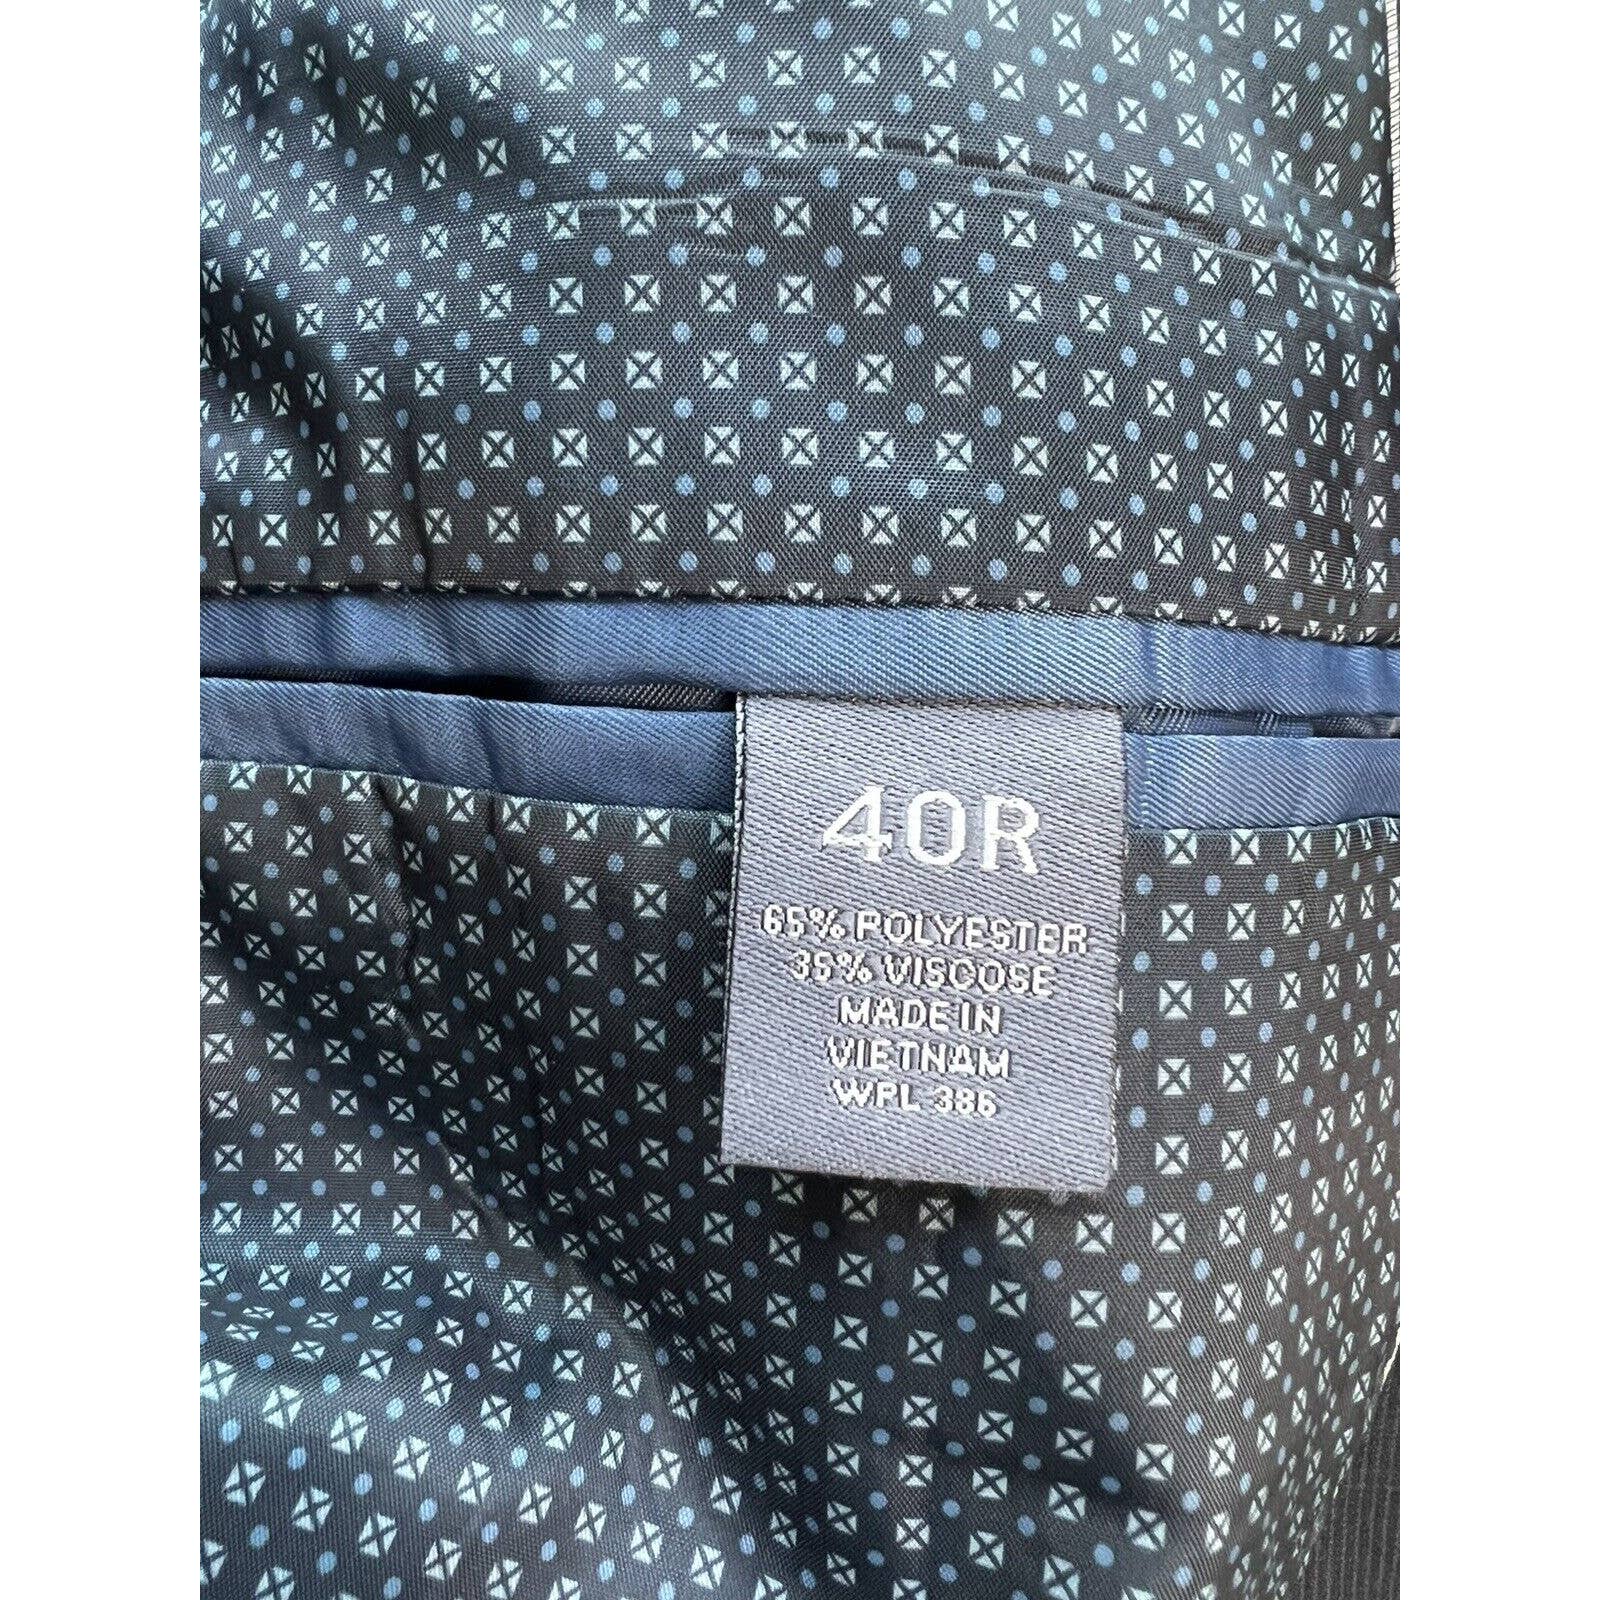 Madison Modern Fit Two Button Suit Jacket Men’s 40R Black Sport Coat Blazer